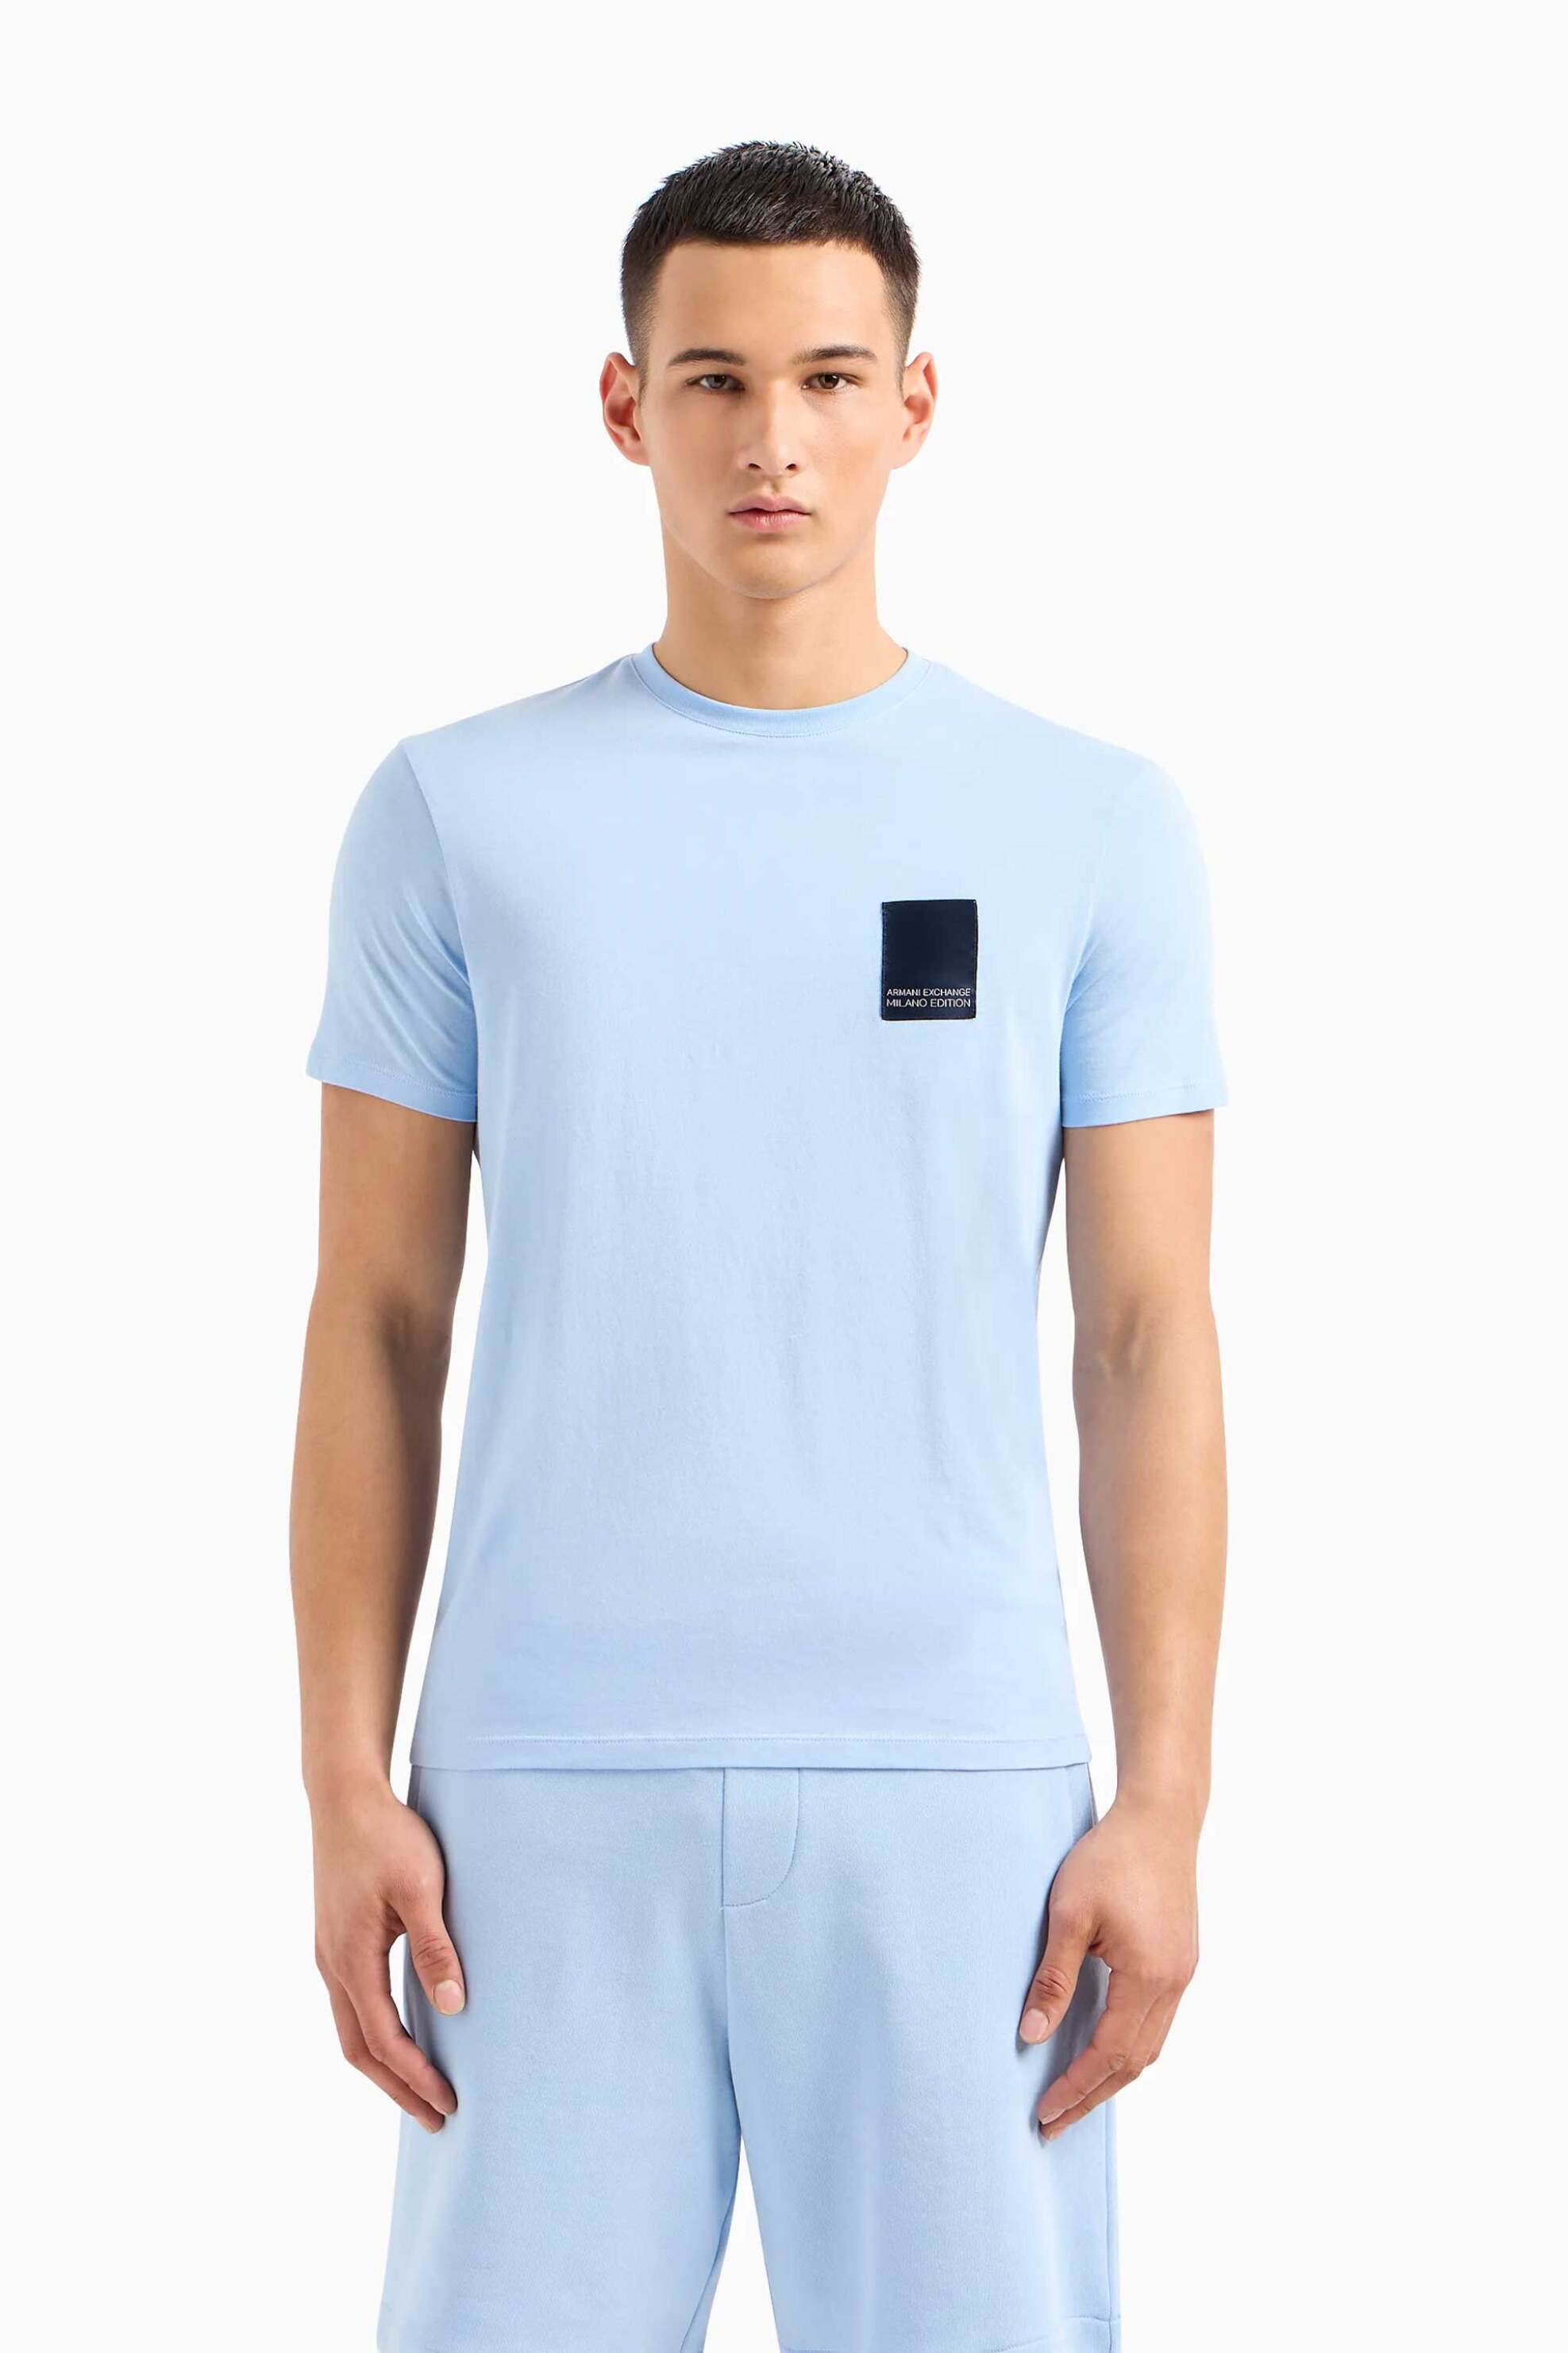 Ανδρική Μόδα > Ανδρικά Ρούχα > Ανδρικές Μπλούζες > Ανδρικά T-Shirts Armani Exchange ανδρικό T-shirt με contrast logo patch Regular Fit - 3DZTHMZJ8EZ Μπλε Ανοιχτό